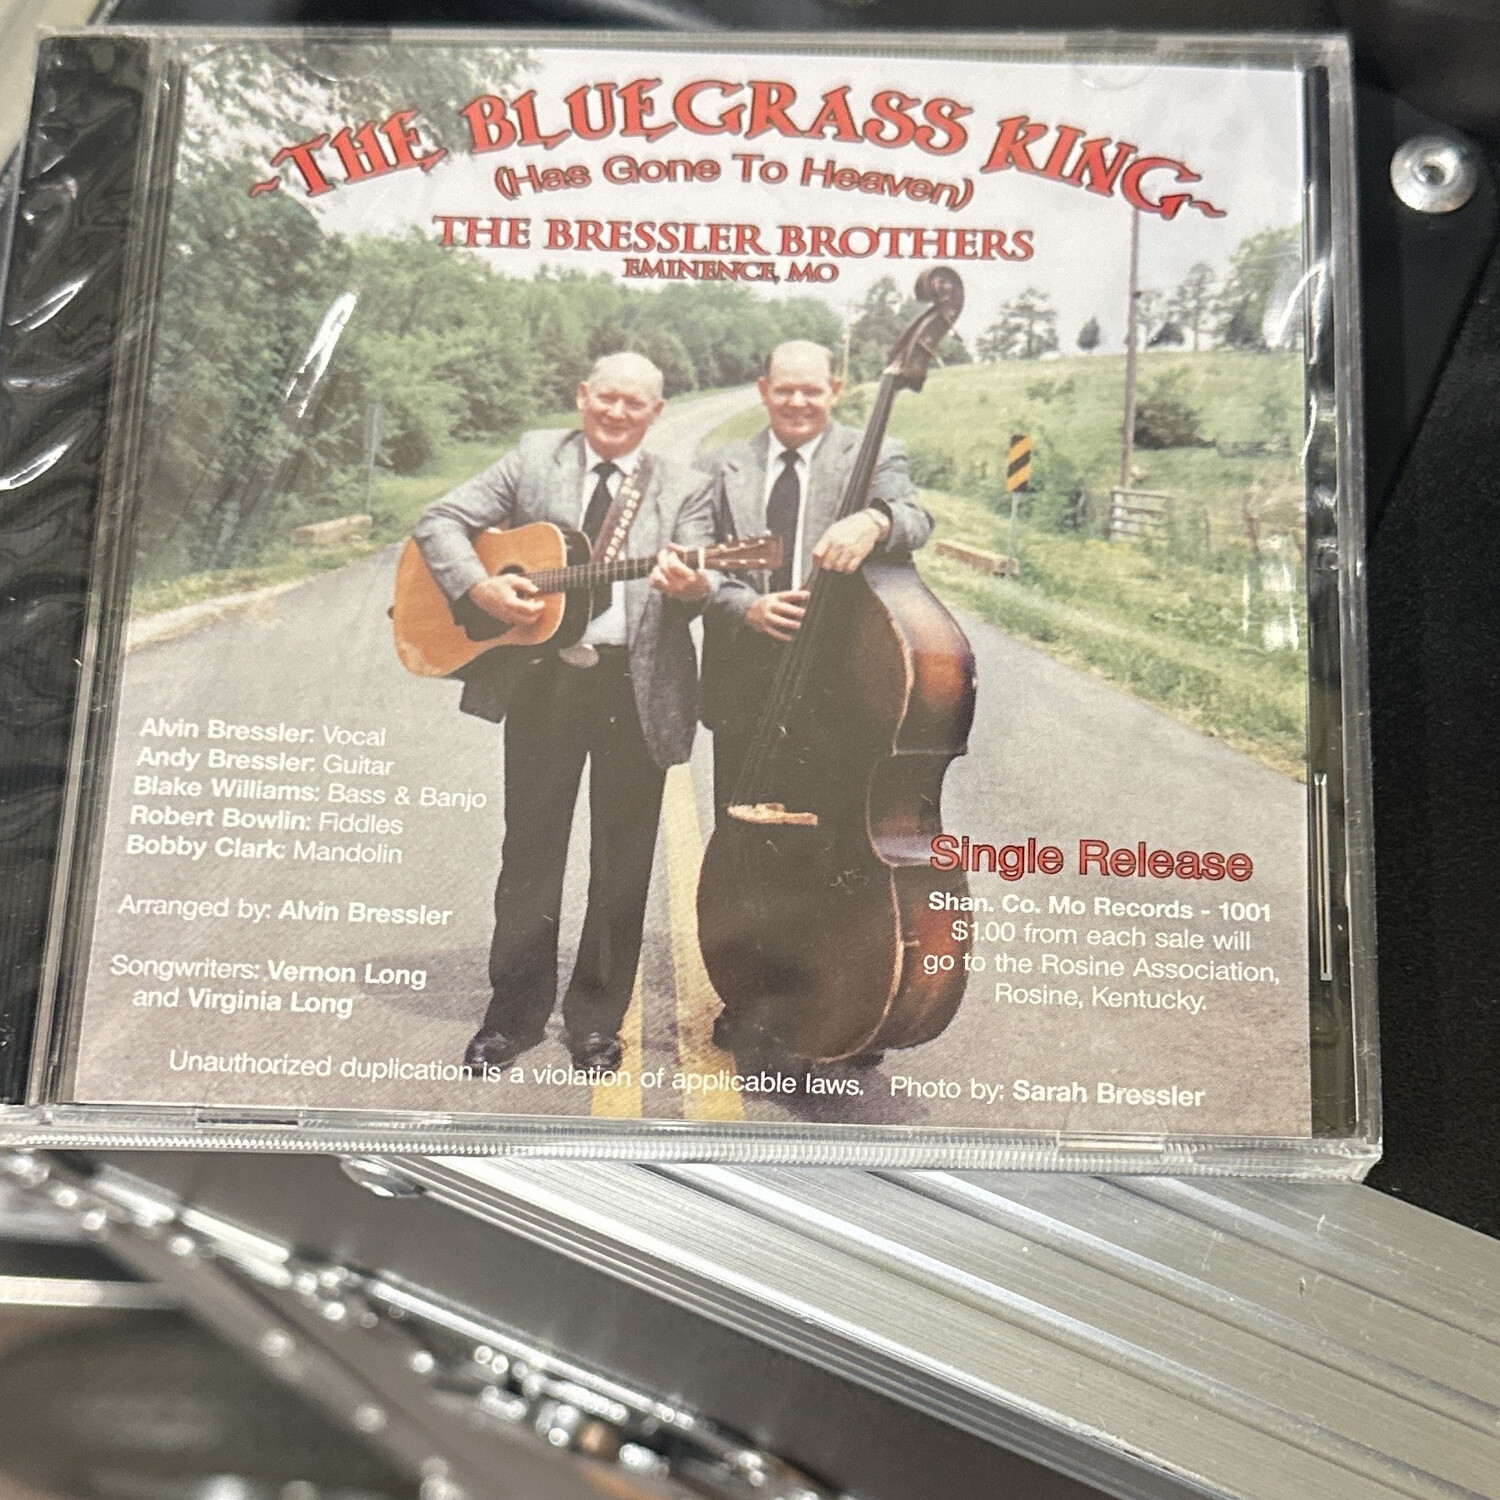 The Bluegrass King, The Bressler Brothers (Bargain Bin)